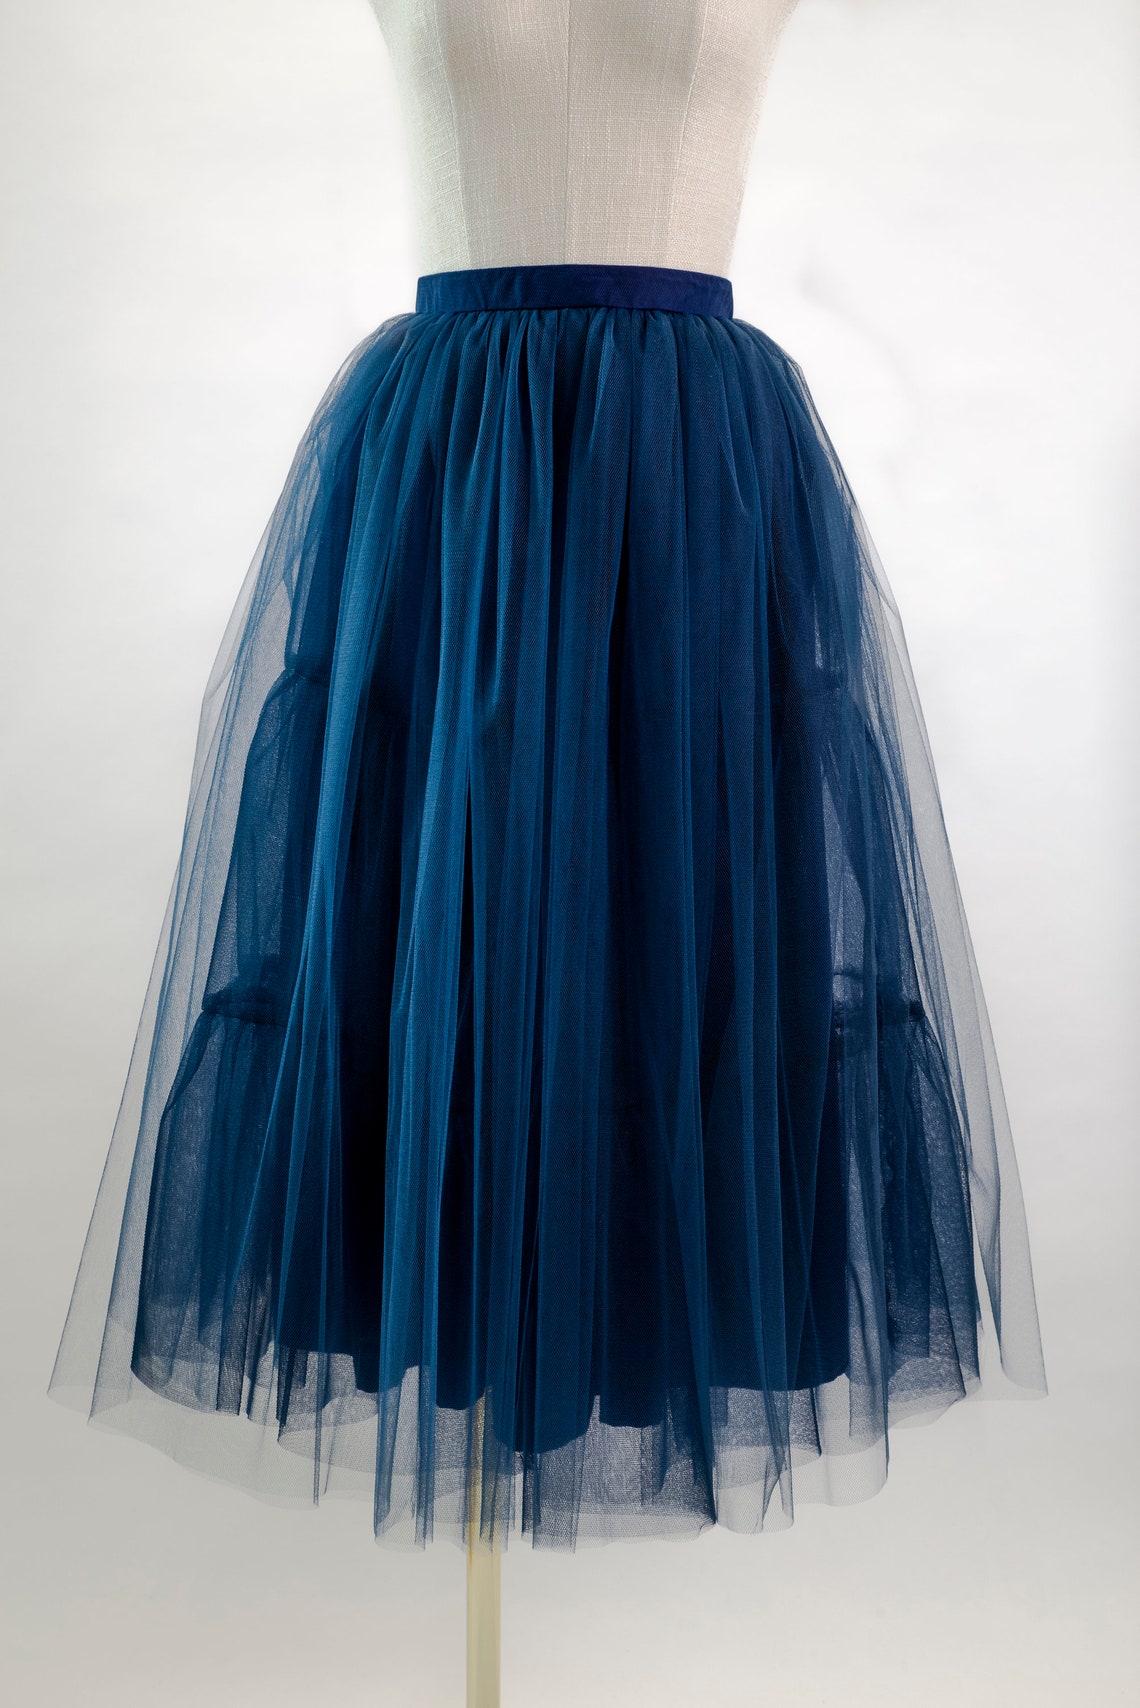 Navy Tulle Skirt Blue Net Skirt Bridesmaid Prom 1950s - Etsy UK